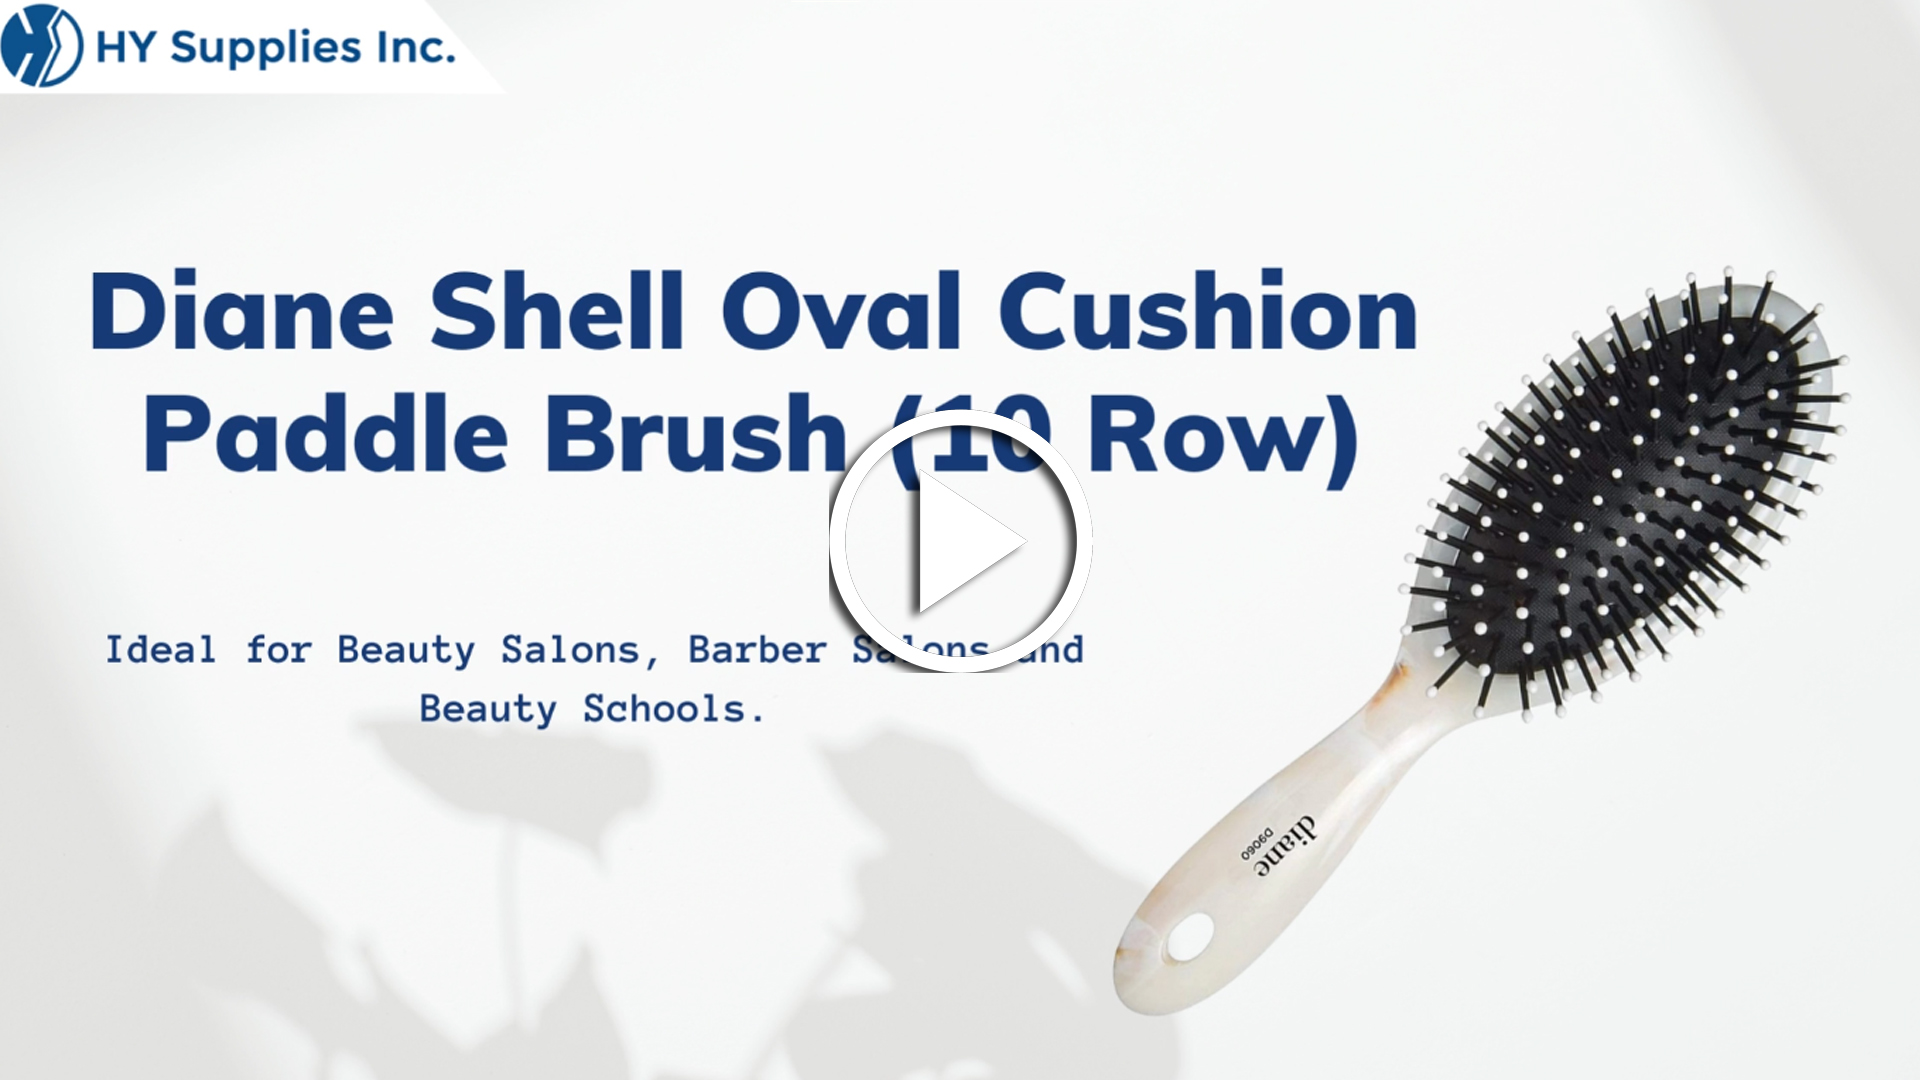 Diane Shell Oval Cushion Paddle Brush (10 Row)